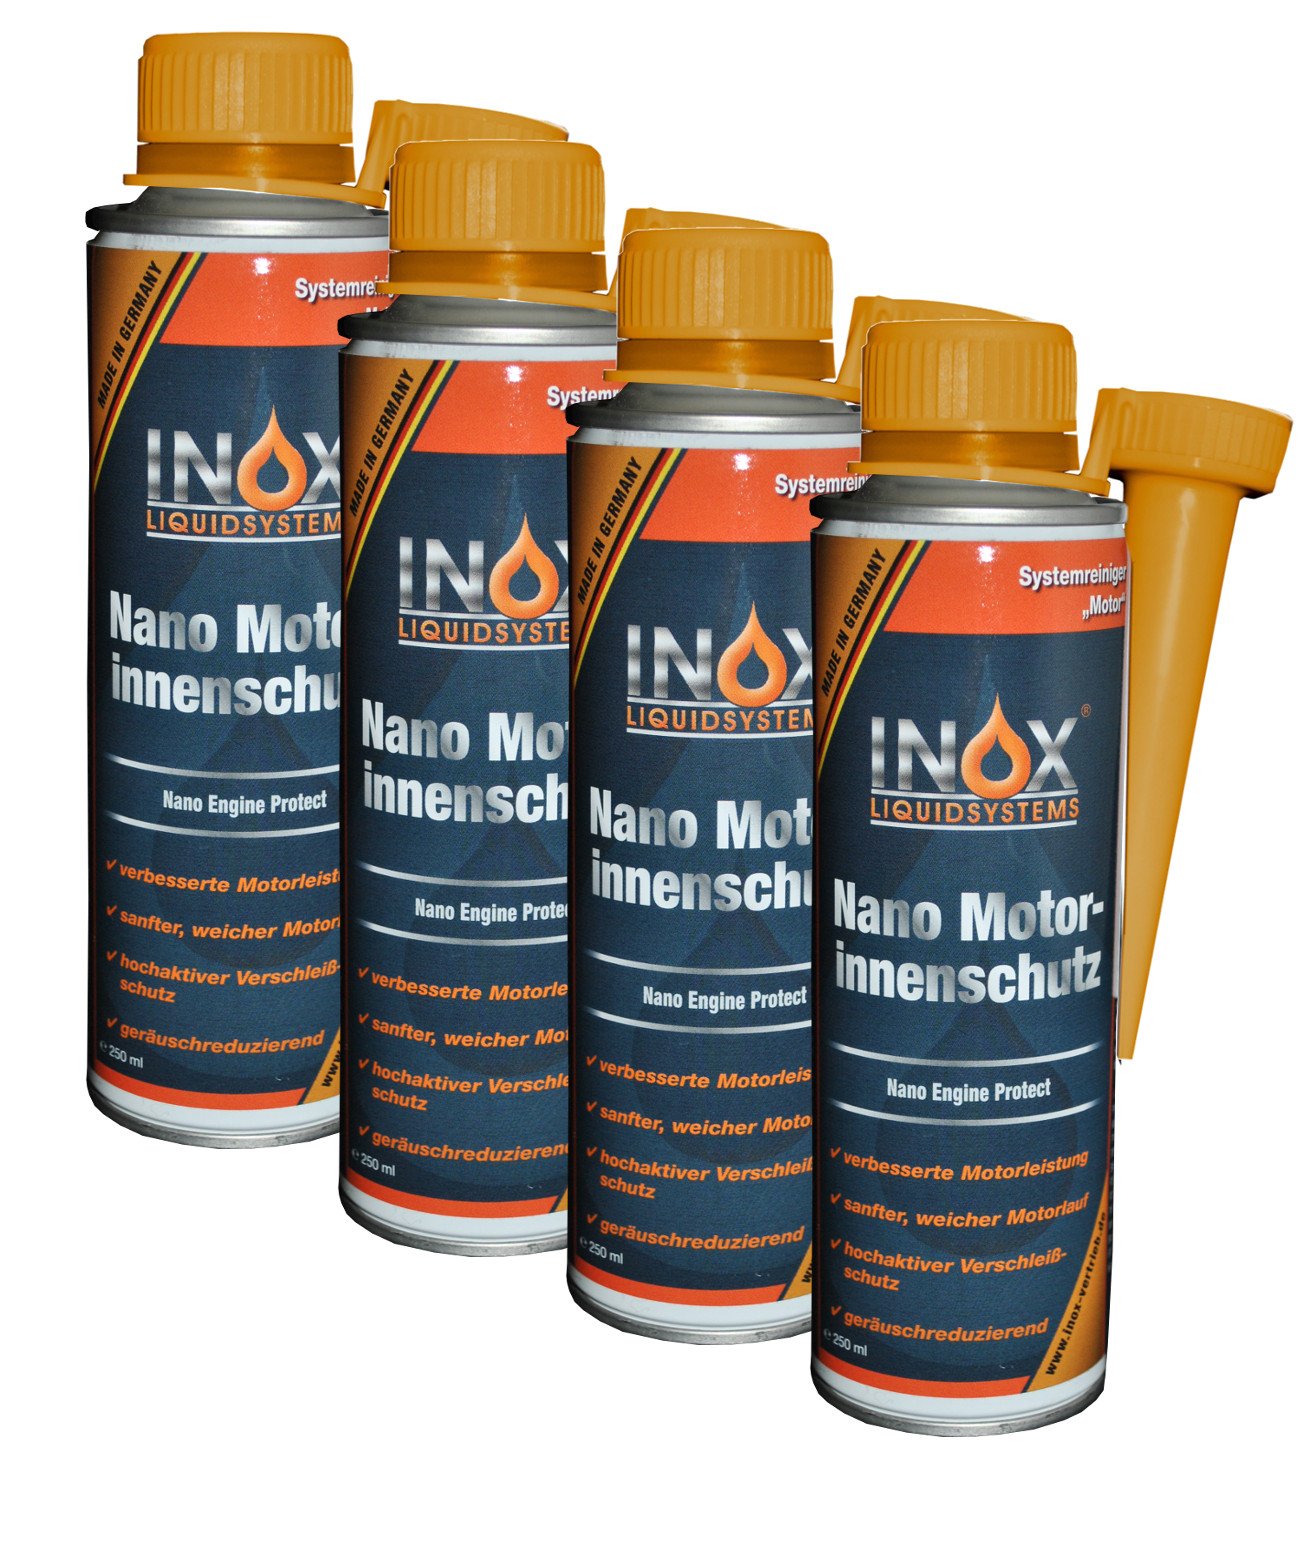 INOX® Nano Motorinnenschutz Additiv, 4 x 250ml - Motorinnenversiegelung verhindert Verschleiß für alle Benzin- und Dieselmotoren von INOX-LIQUIDSYSTEMS